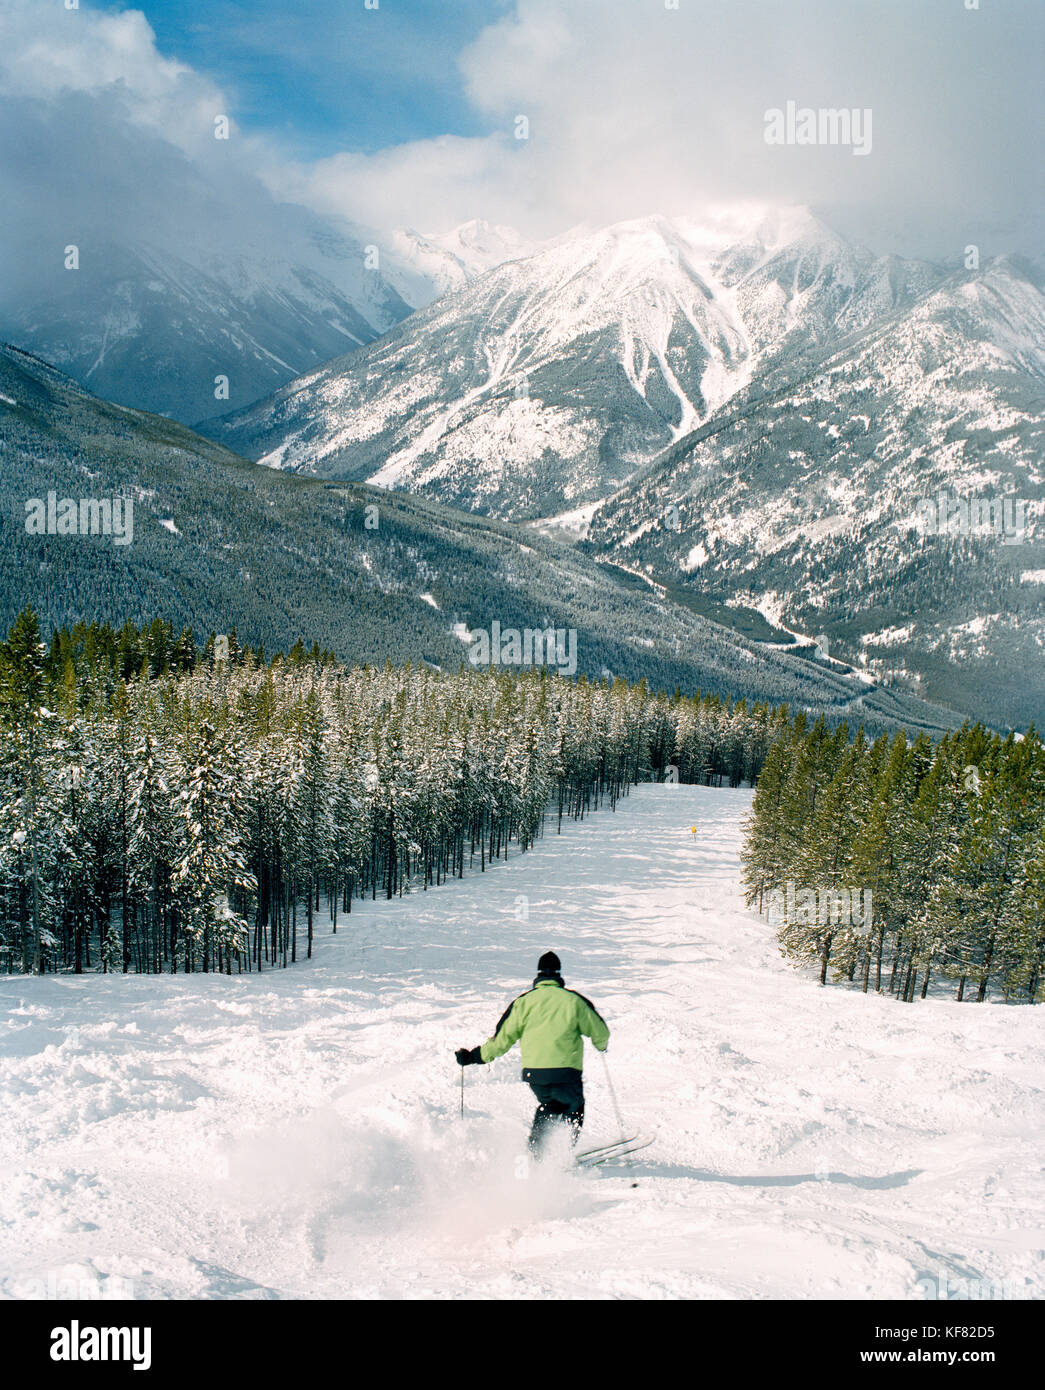 Kanada, BC Rockies, Skifahren die Beulen im Panorama Skigebiet mit Schnee bedeckten Berg im Hintergrund Stockfoto